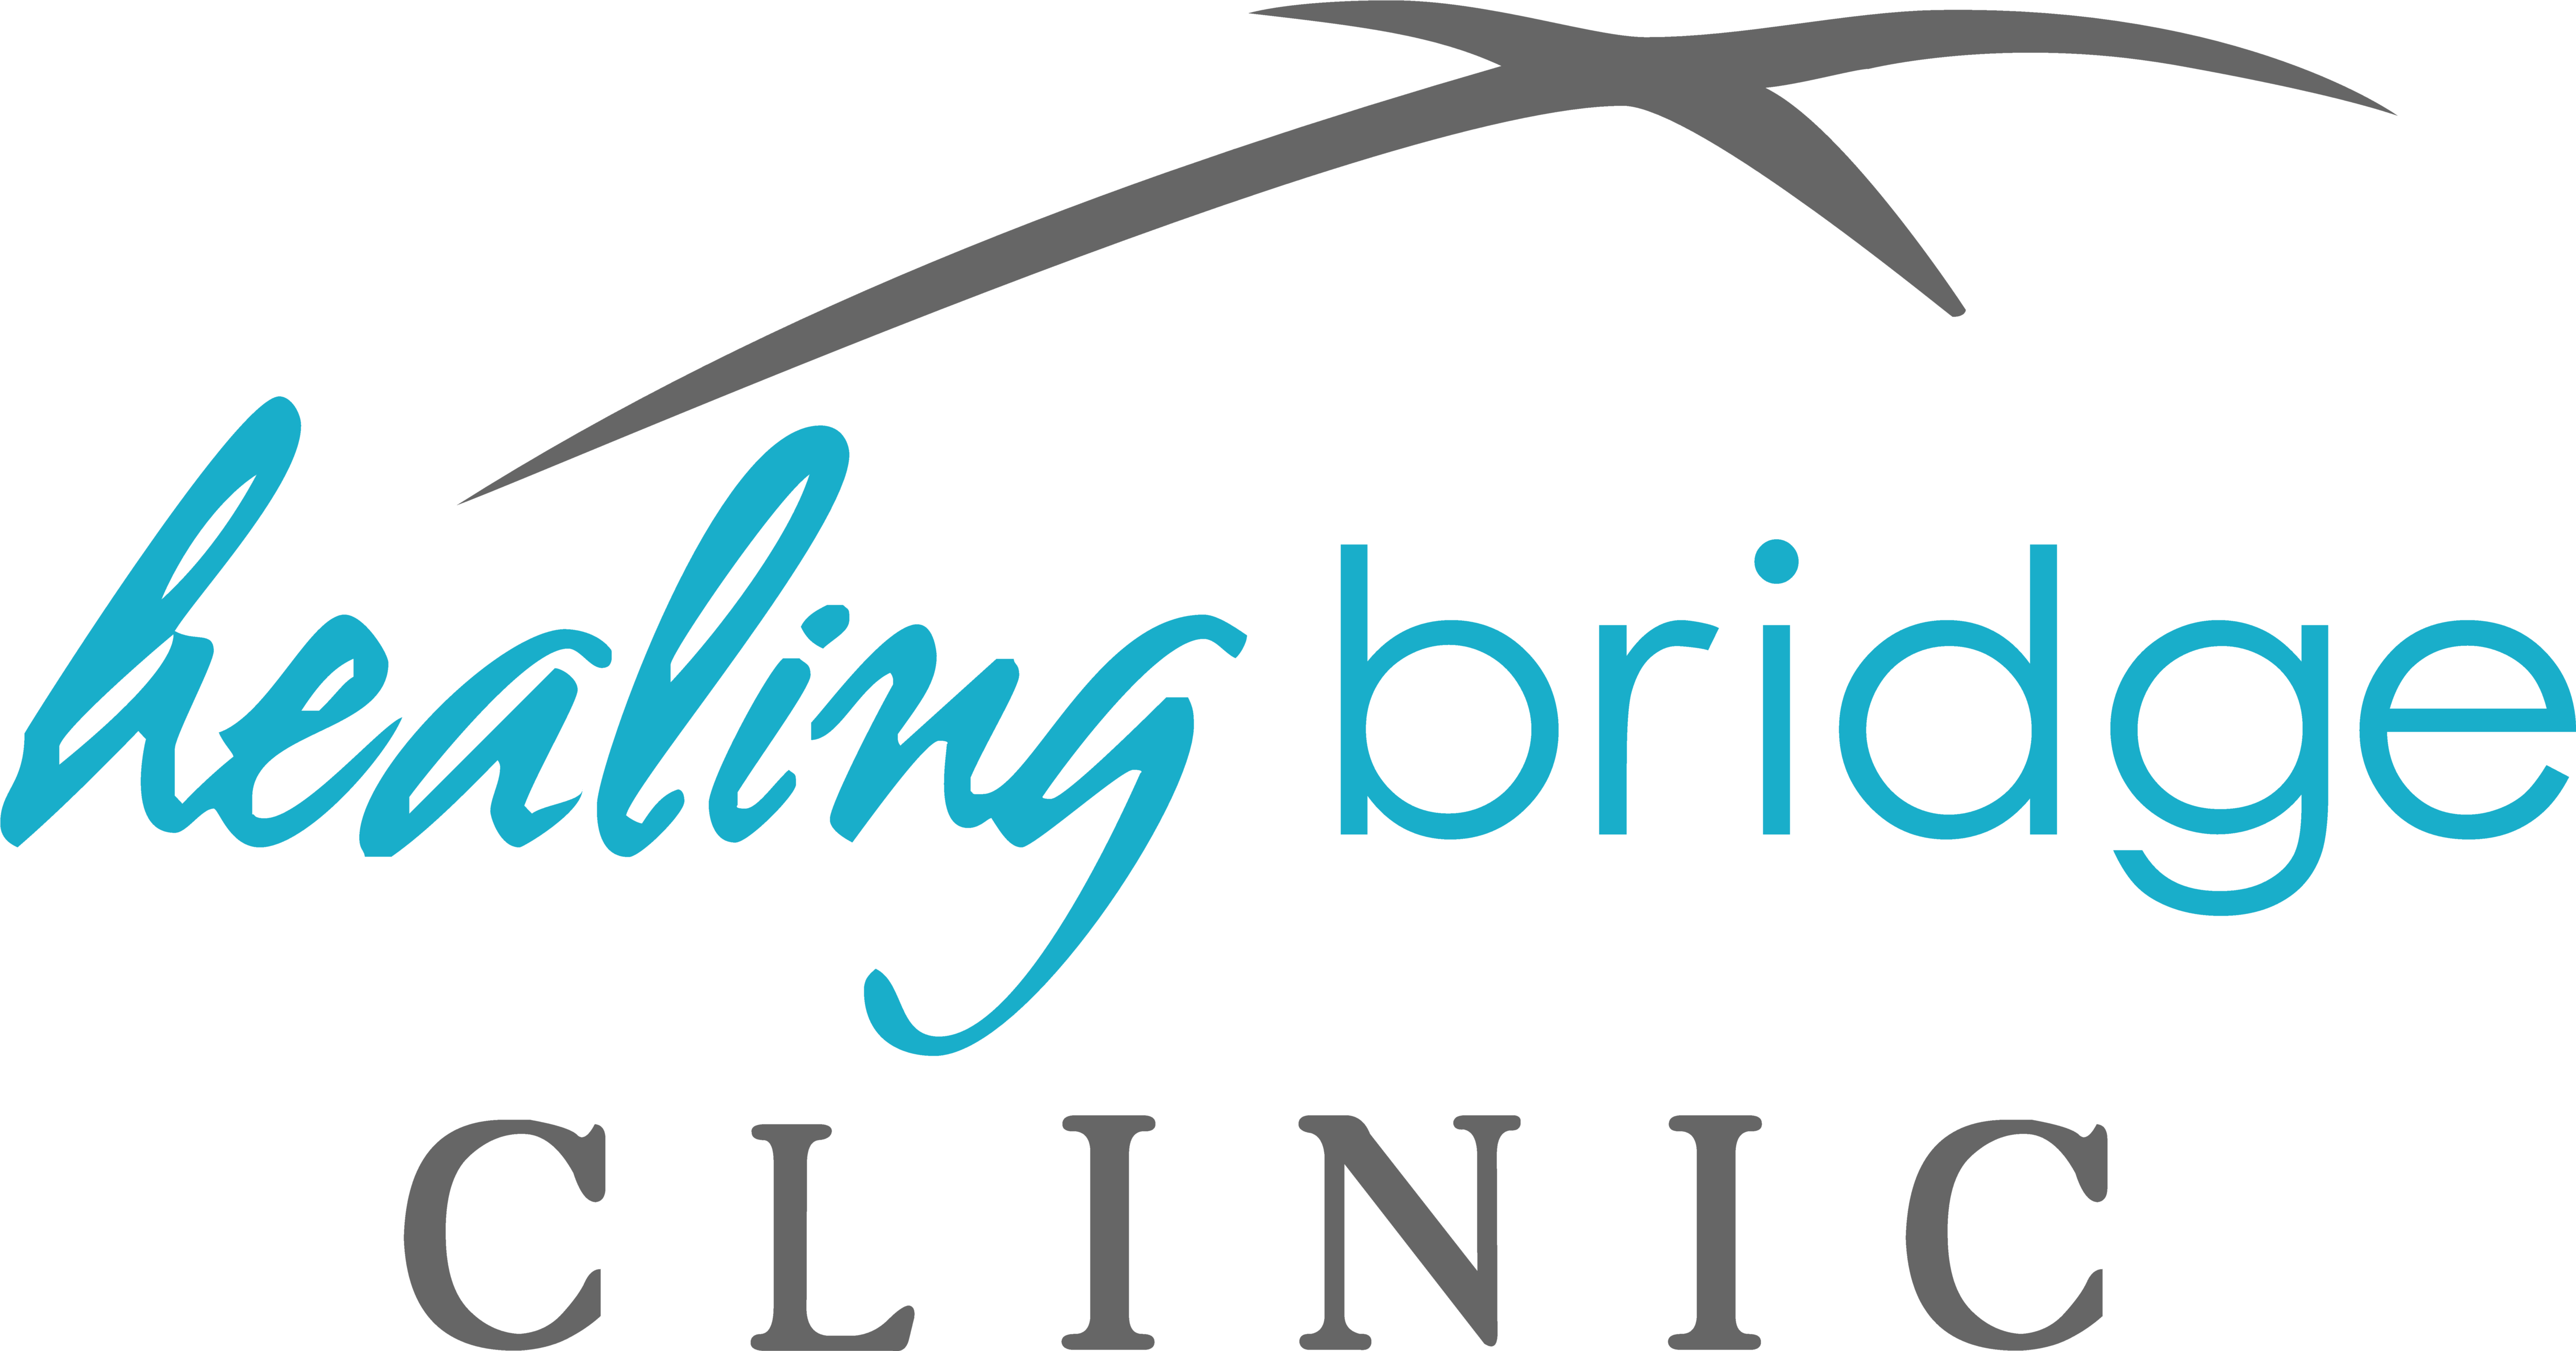 Healing Bridge Clinic